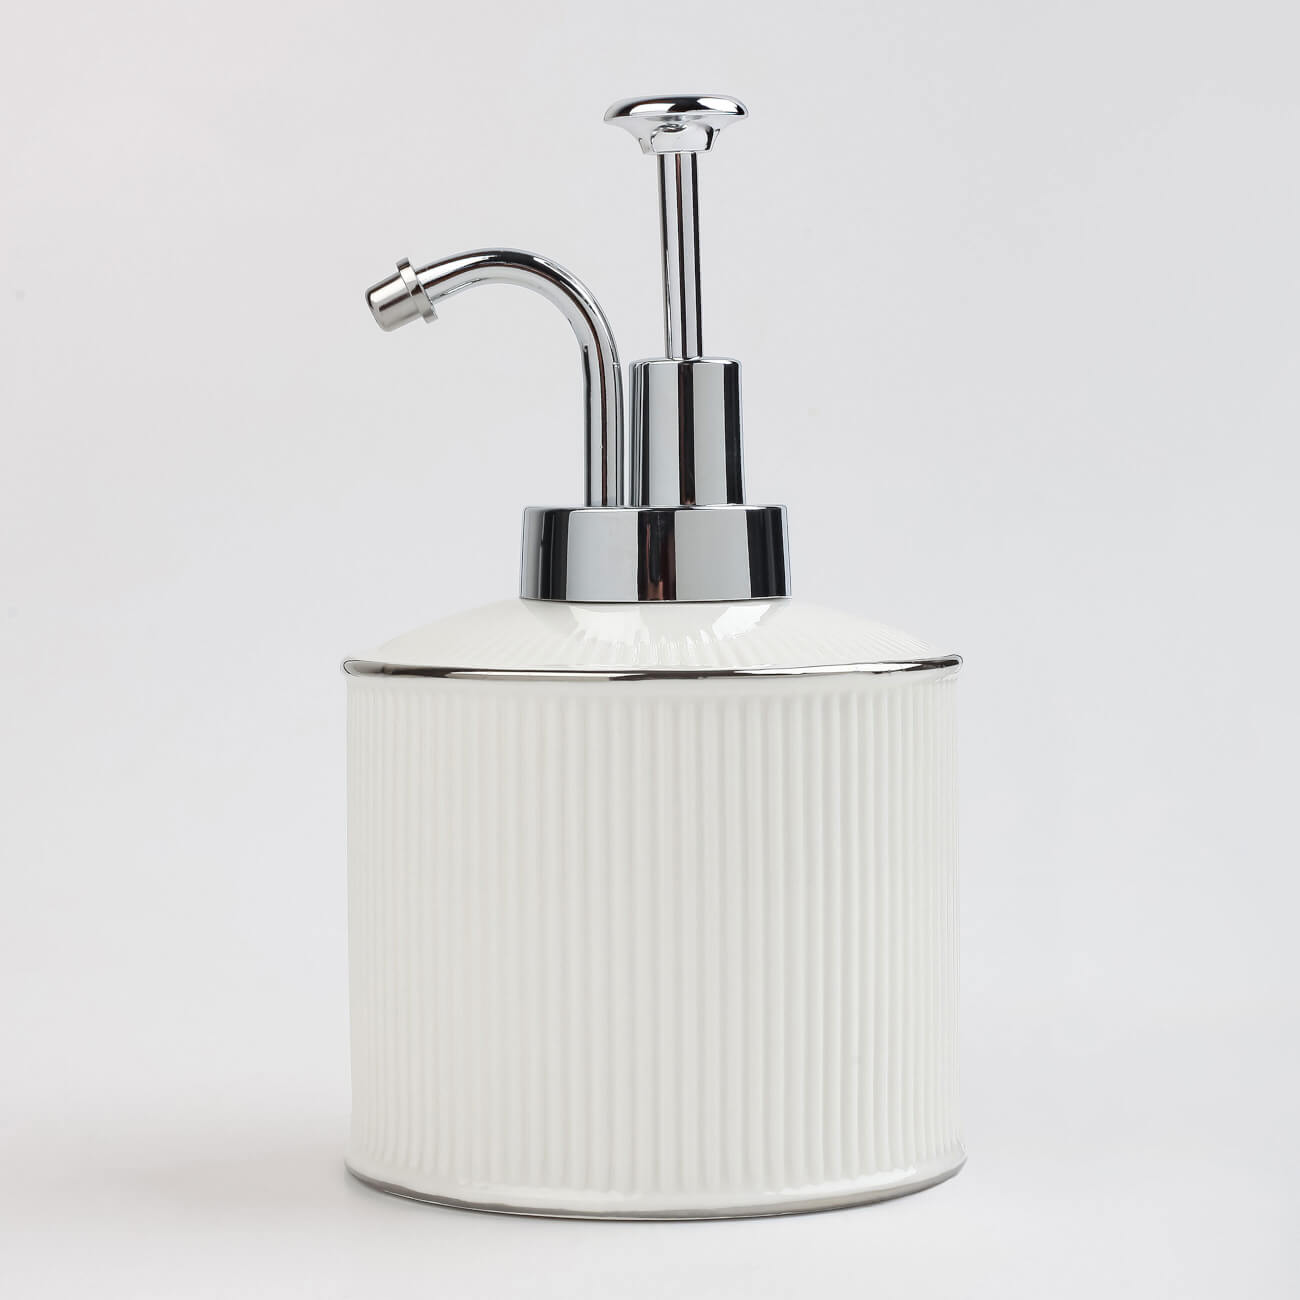 Liquid soap dispenser, 370 ml, ceramic / plastic, white, with silver edging, Kaliopa изображение № 1